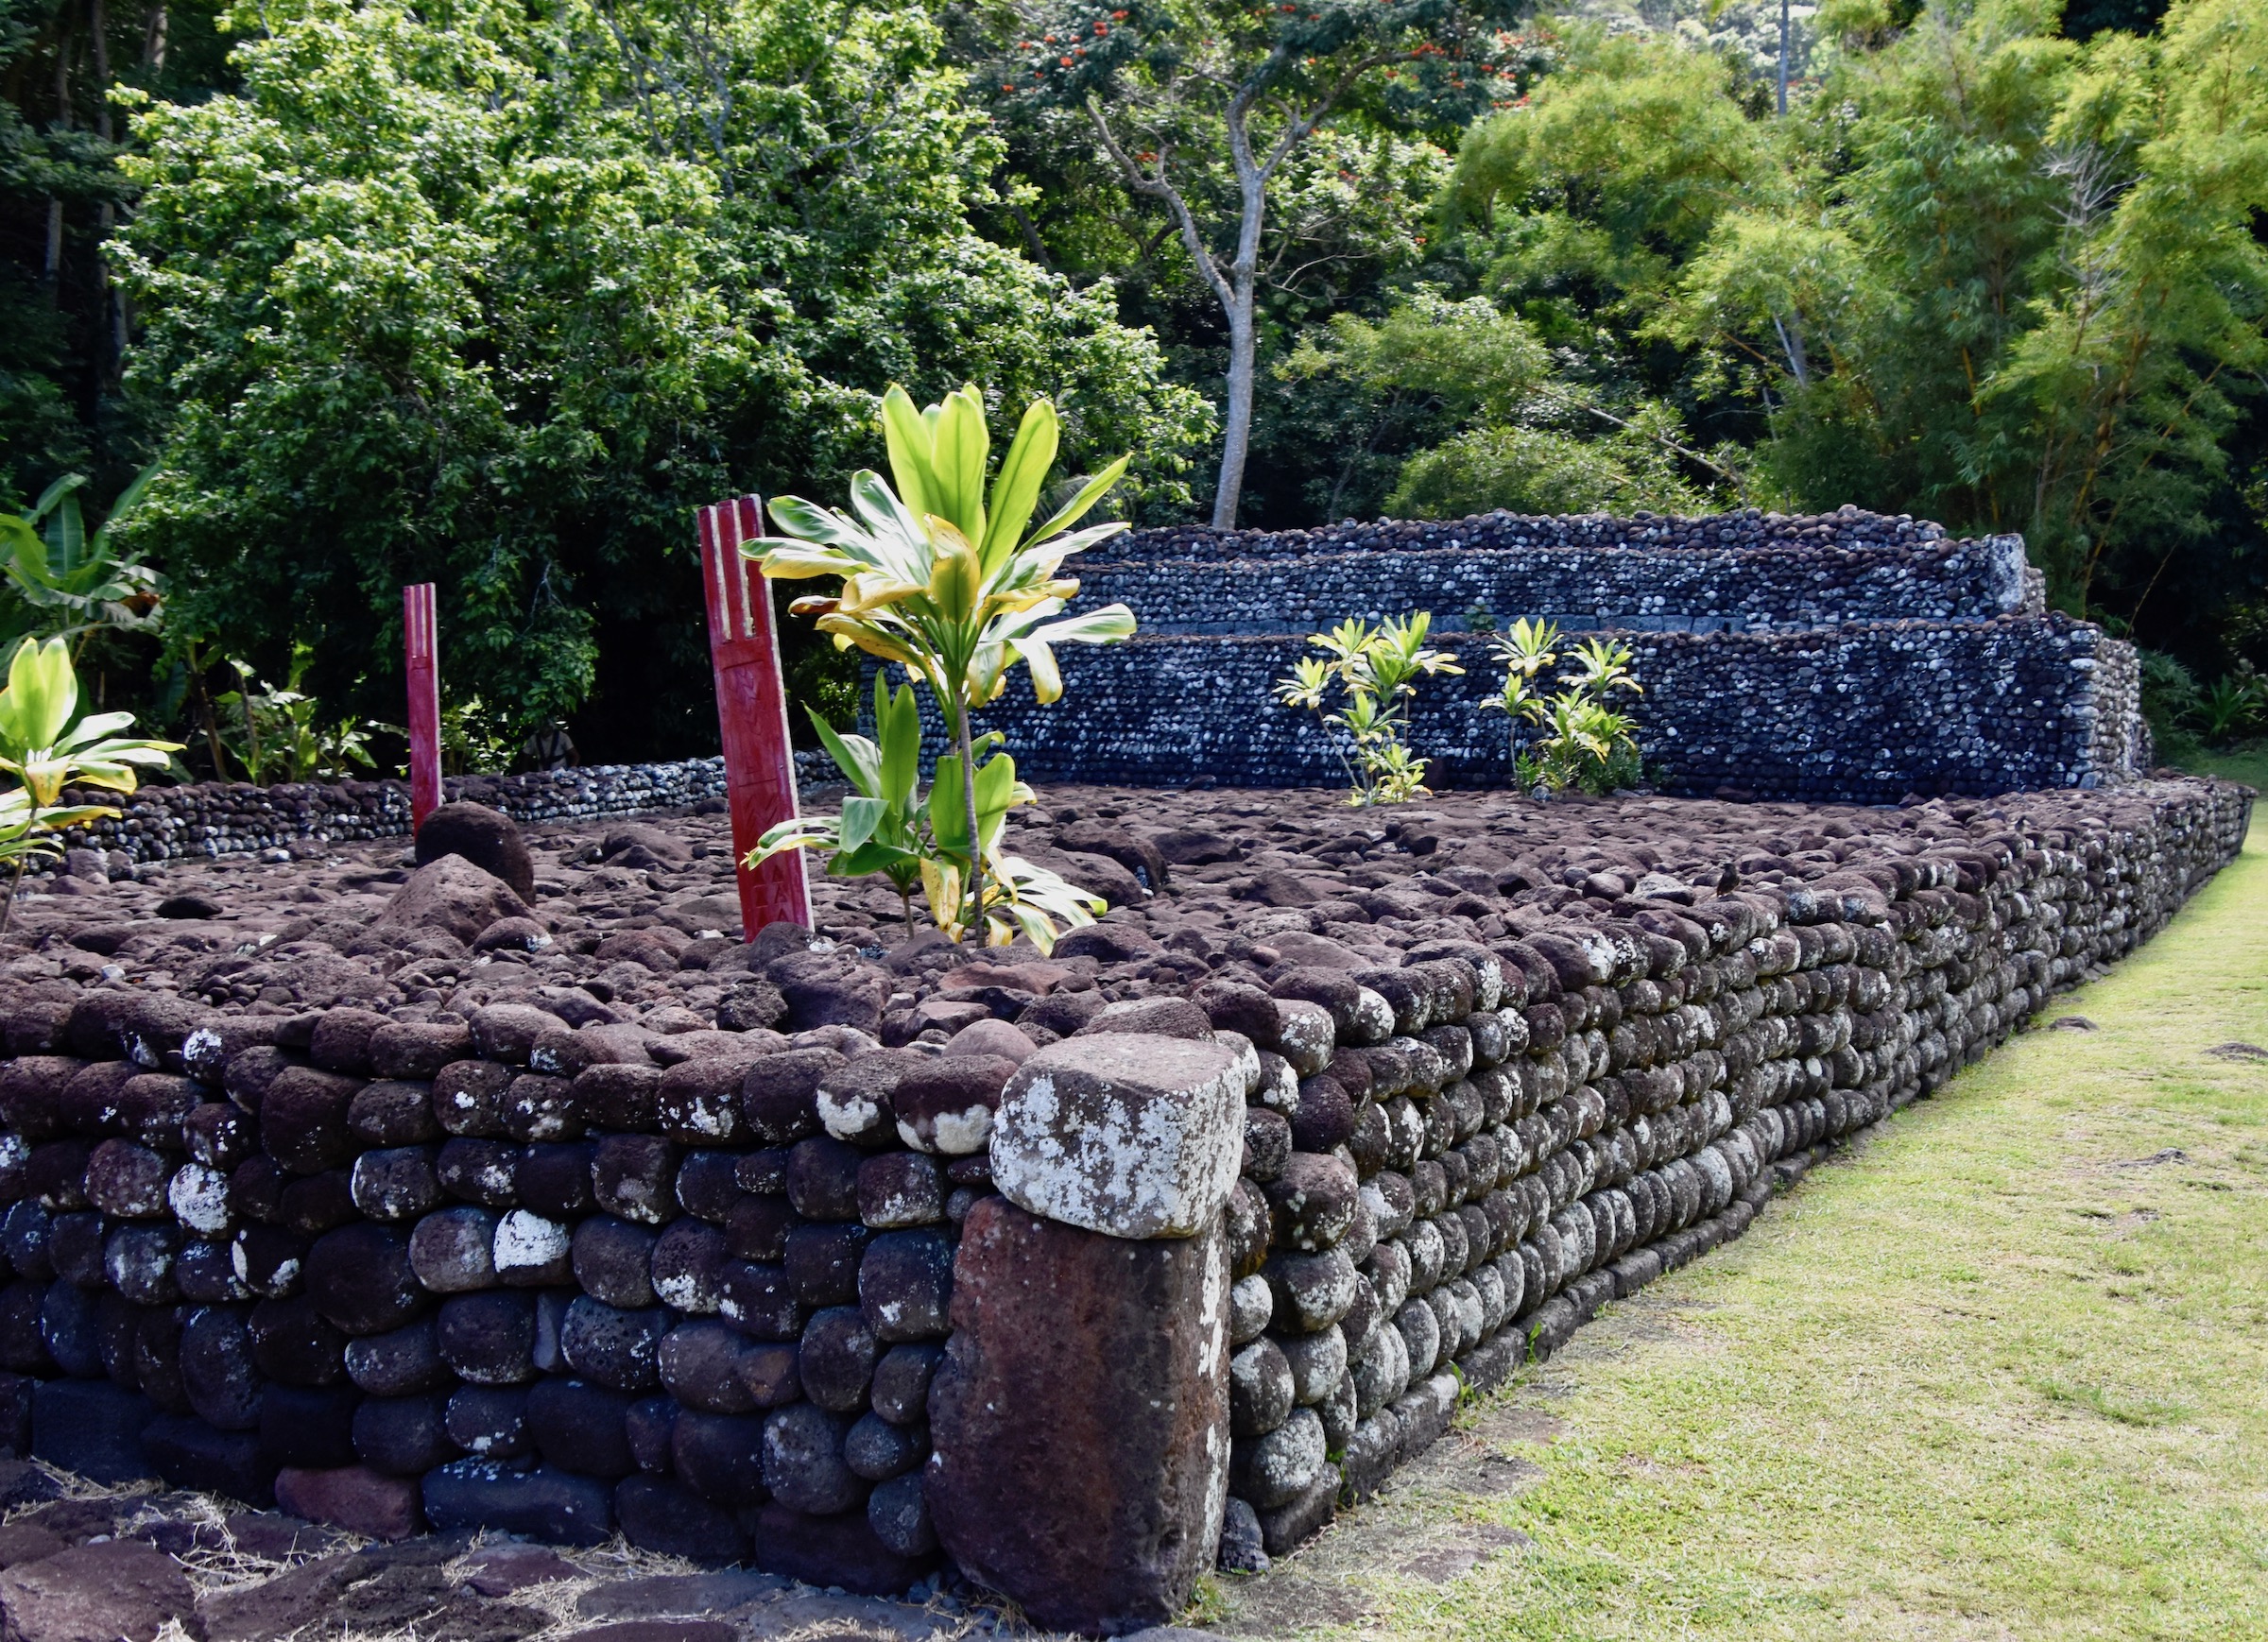 The Ahu at Marae Arahurahu, Tahiti